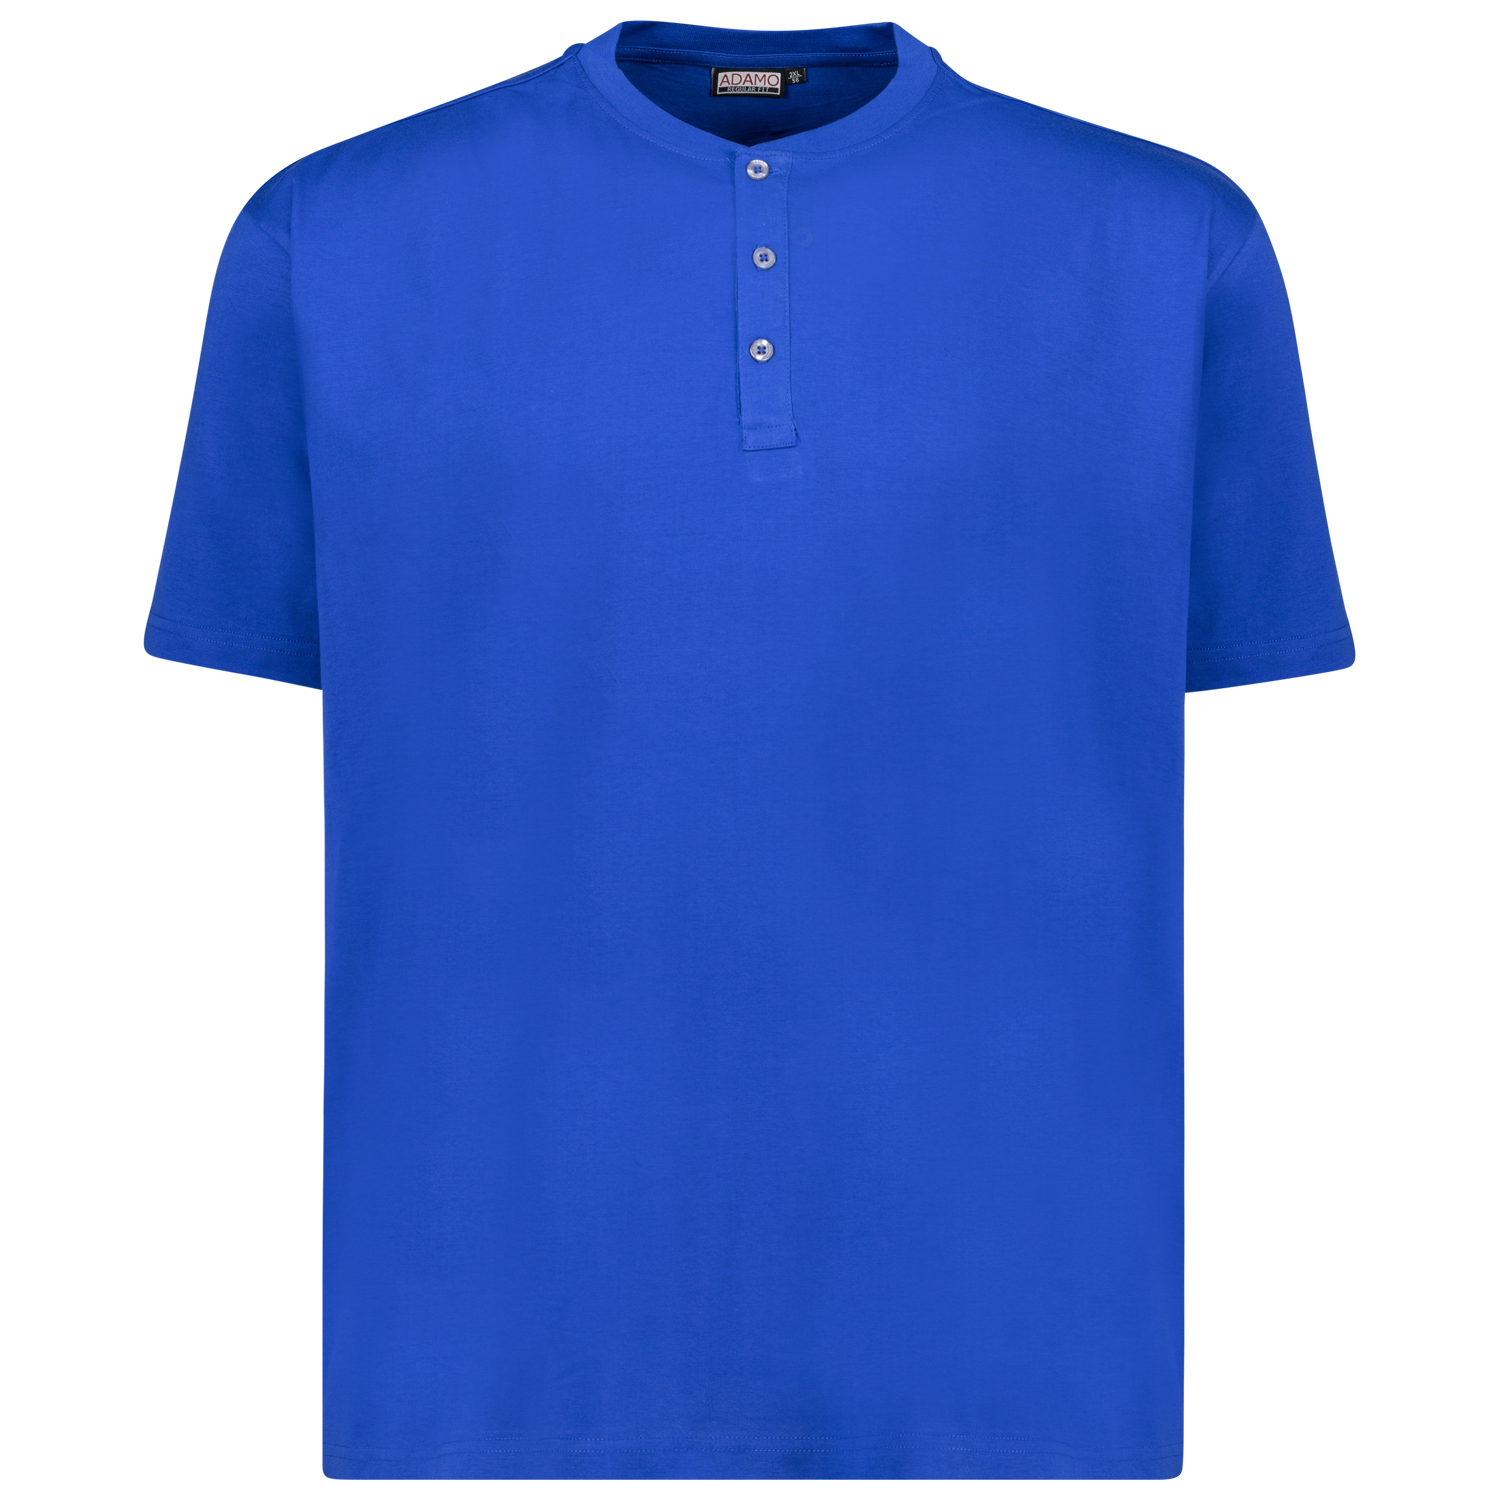 T-shirt série SILAS by ADAMO jusqu'à la grande taille 10XL - couleur: bleu royal